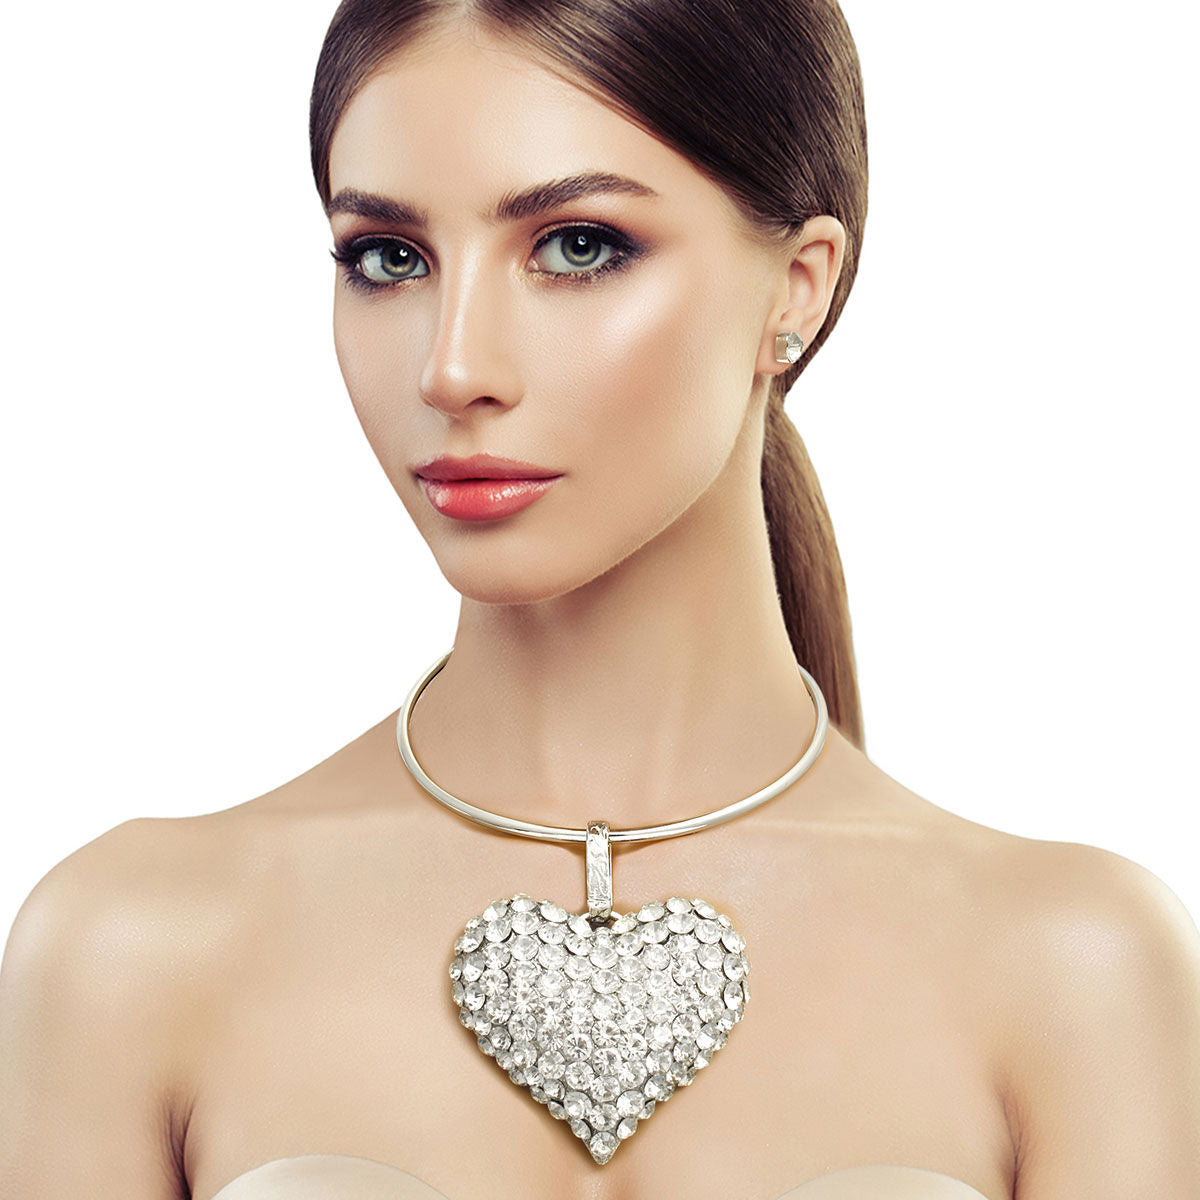 Silver Rigid Collar XL Rhinestone Heart Set